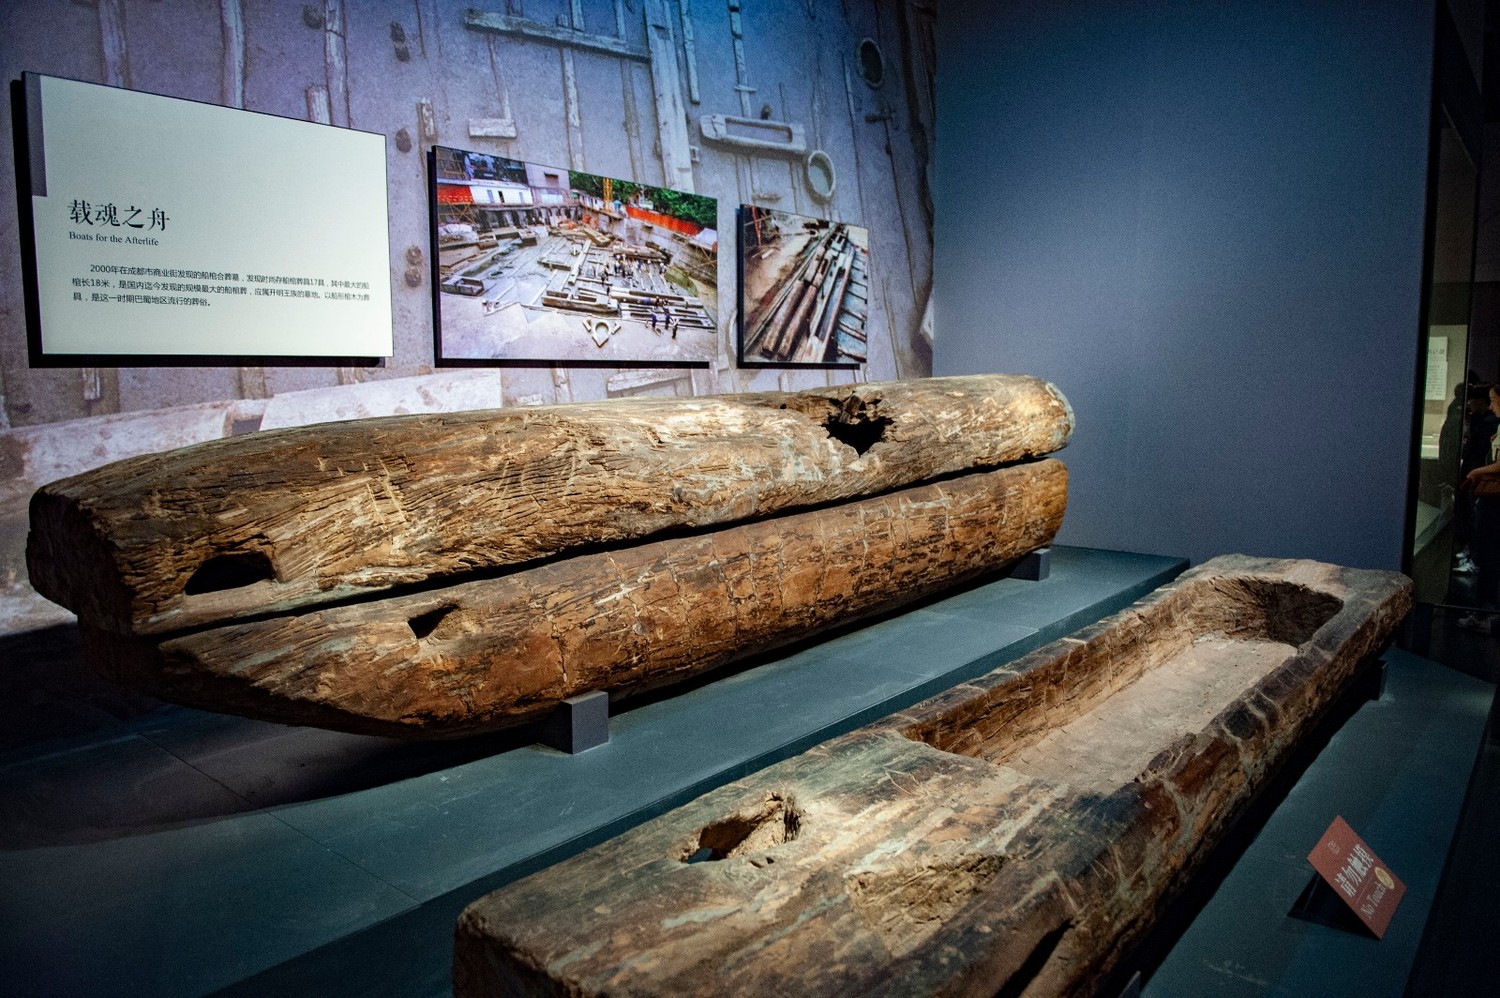 古蜀国时期的丧葬习俗，具有丰富深邃的文化内涵